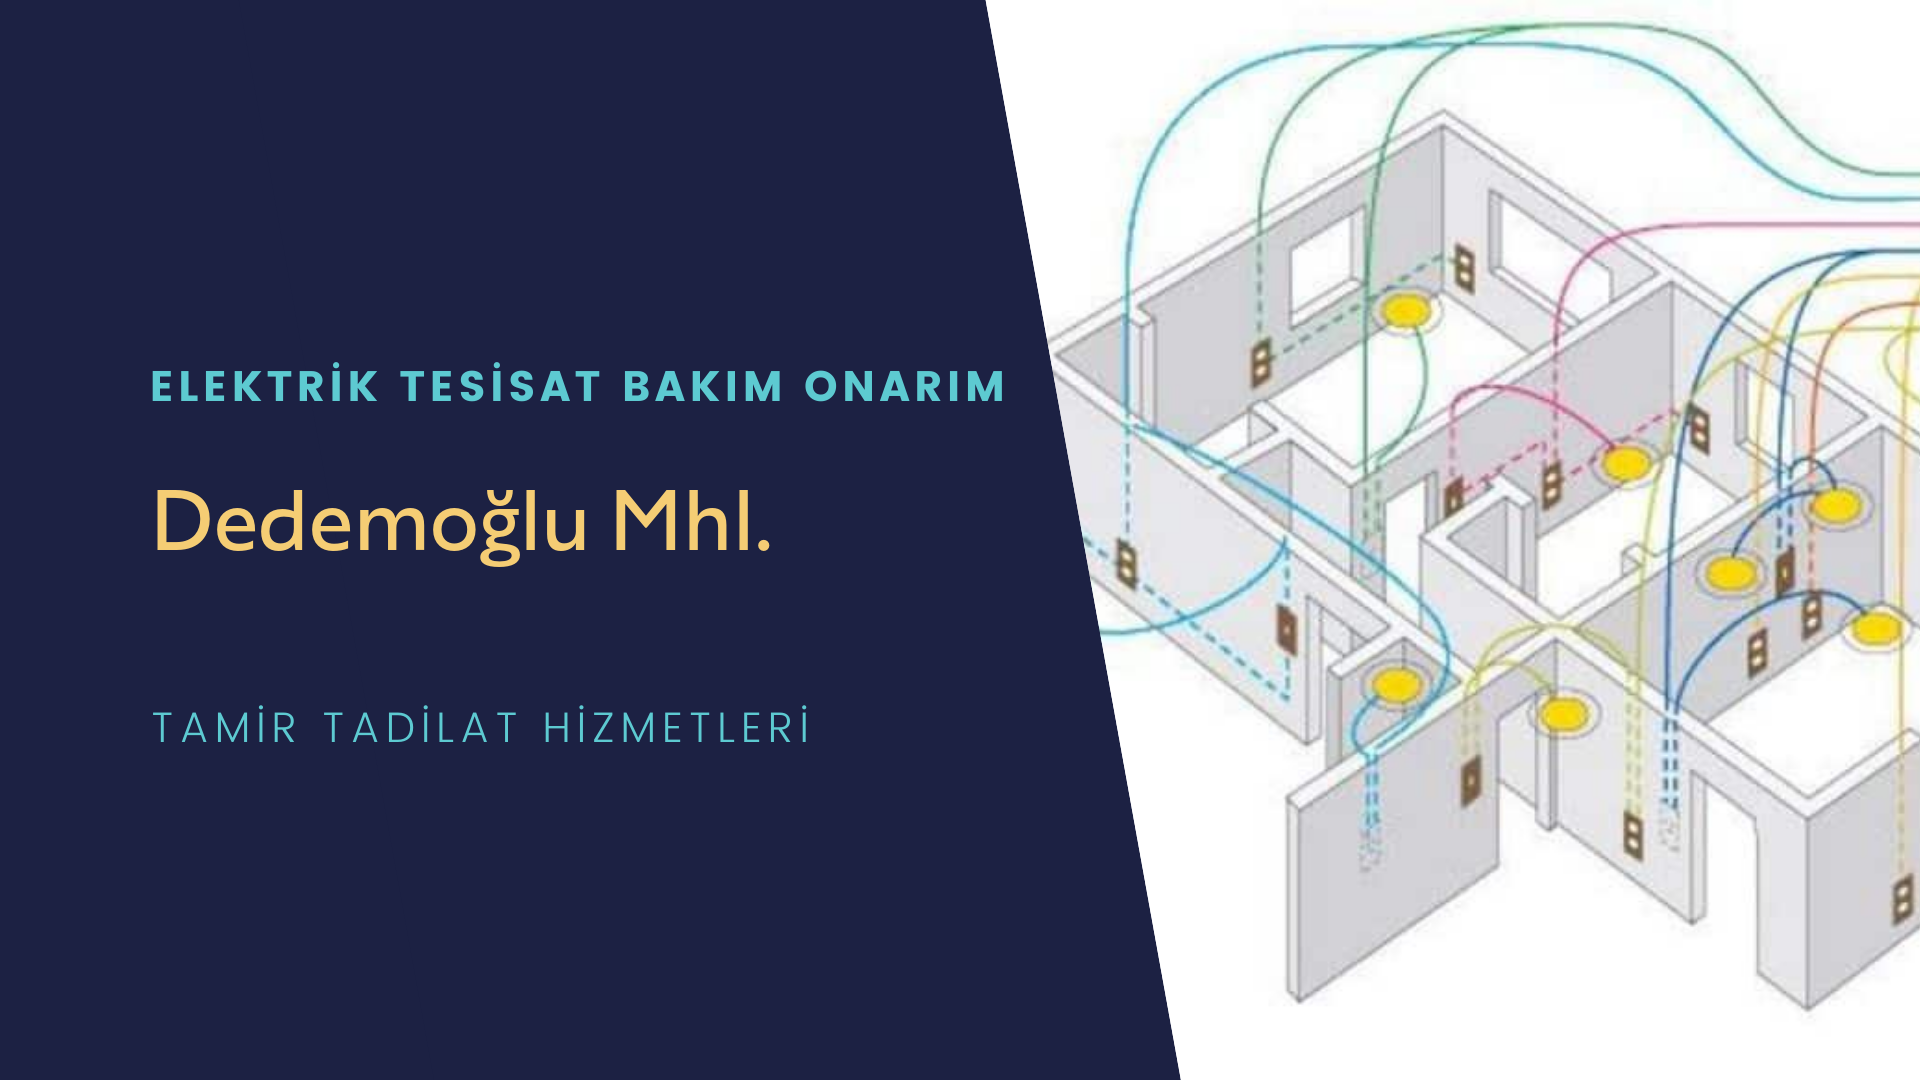 Dedemoğlu Mhl.  elektrik tesisatı ustalarımı arıyorsunuz doğru adrestenizi Dedemoğlu Mhl. elektrik tesisatı ustalarımız 7/24 sizlere hizmet vermekten mutluluk duyar.